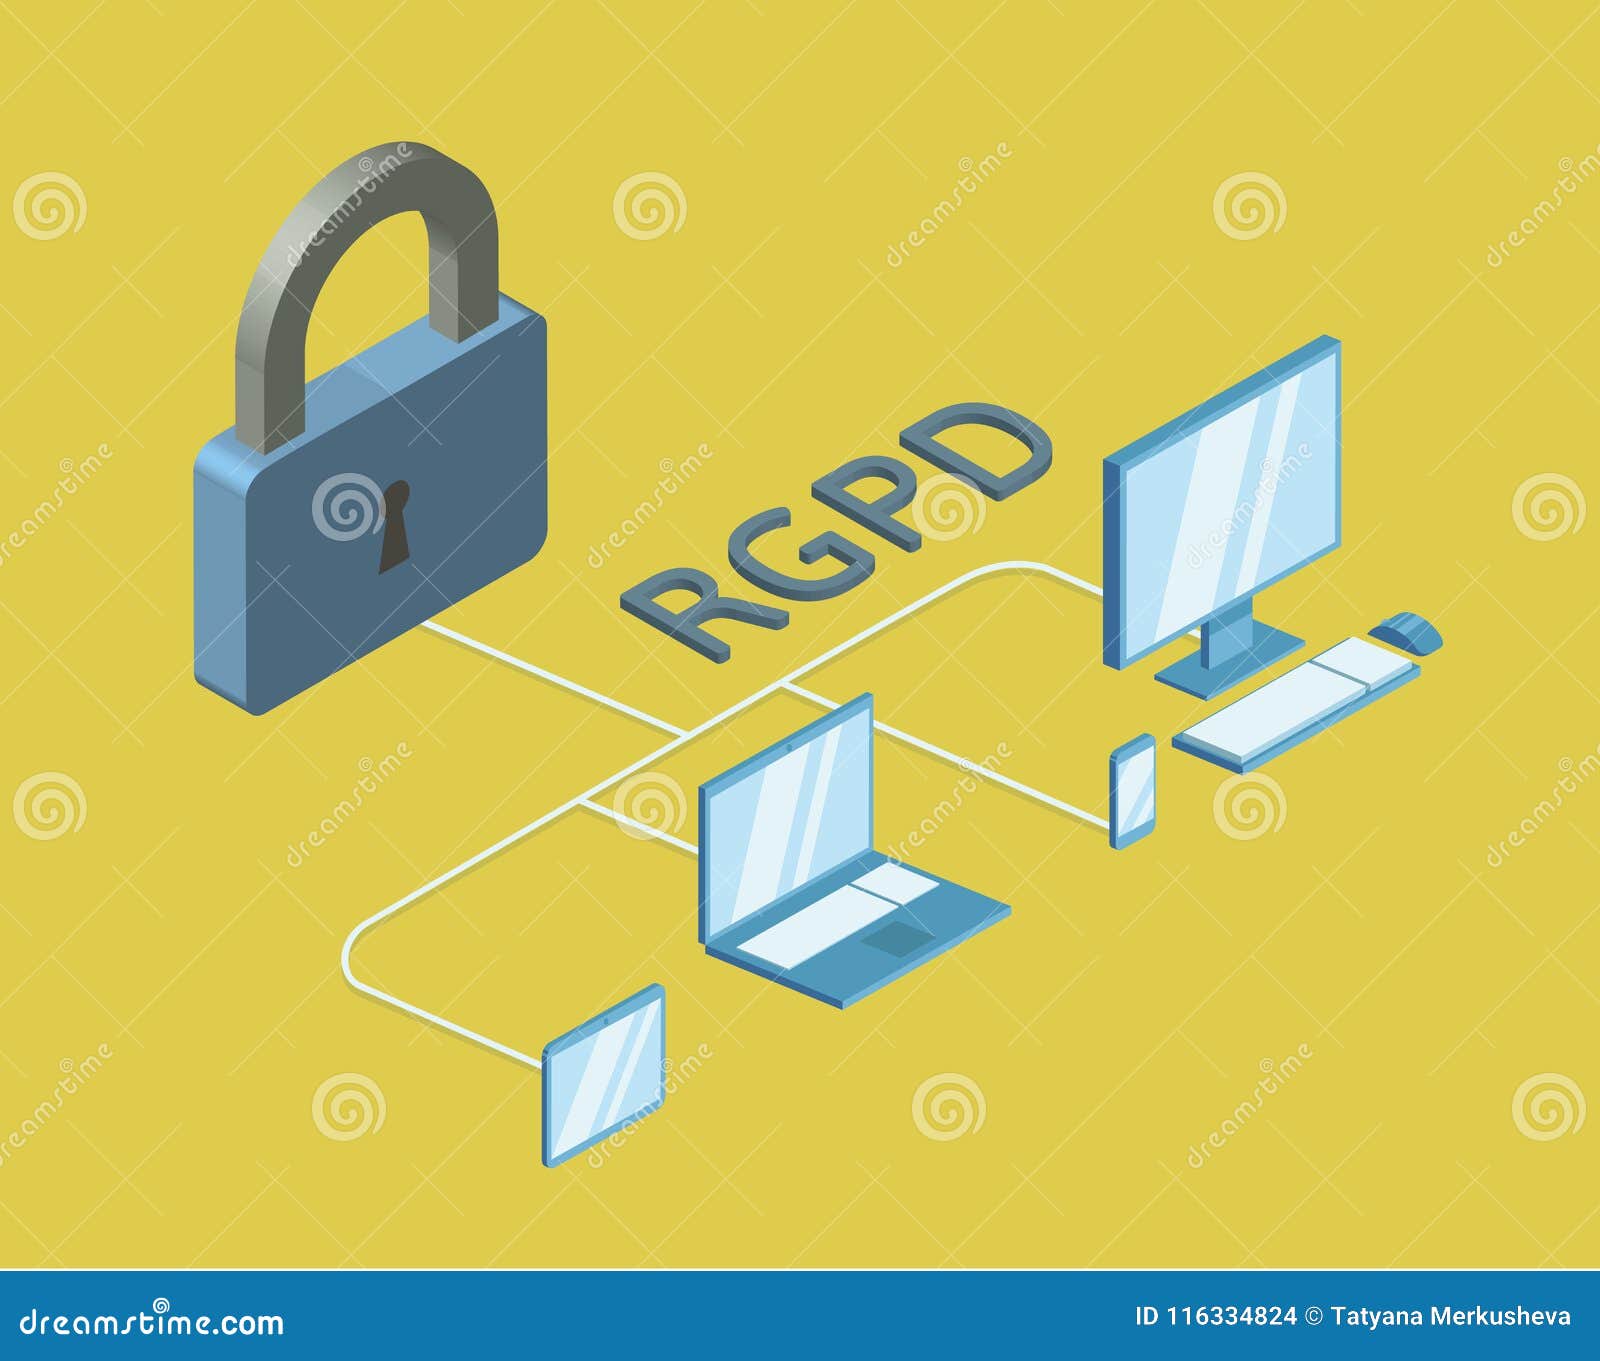 rgpd, spanish and italian version version of gdpr, regolamento generale sulla protezione dei dati. concept 